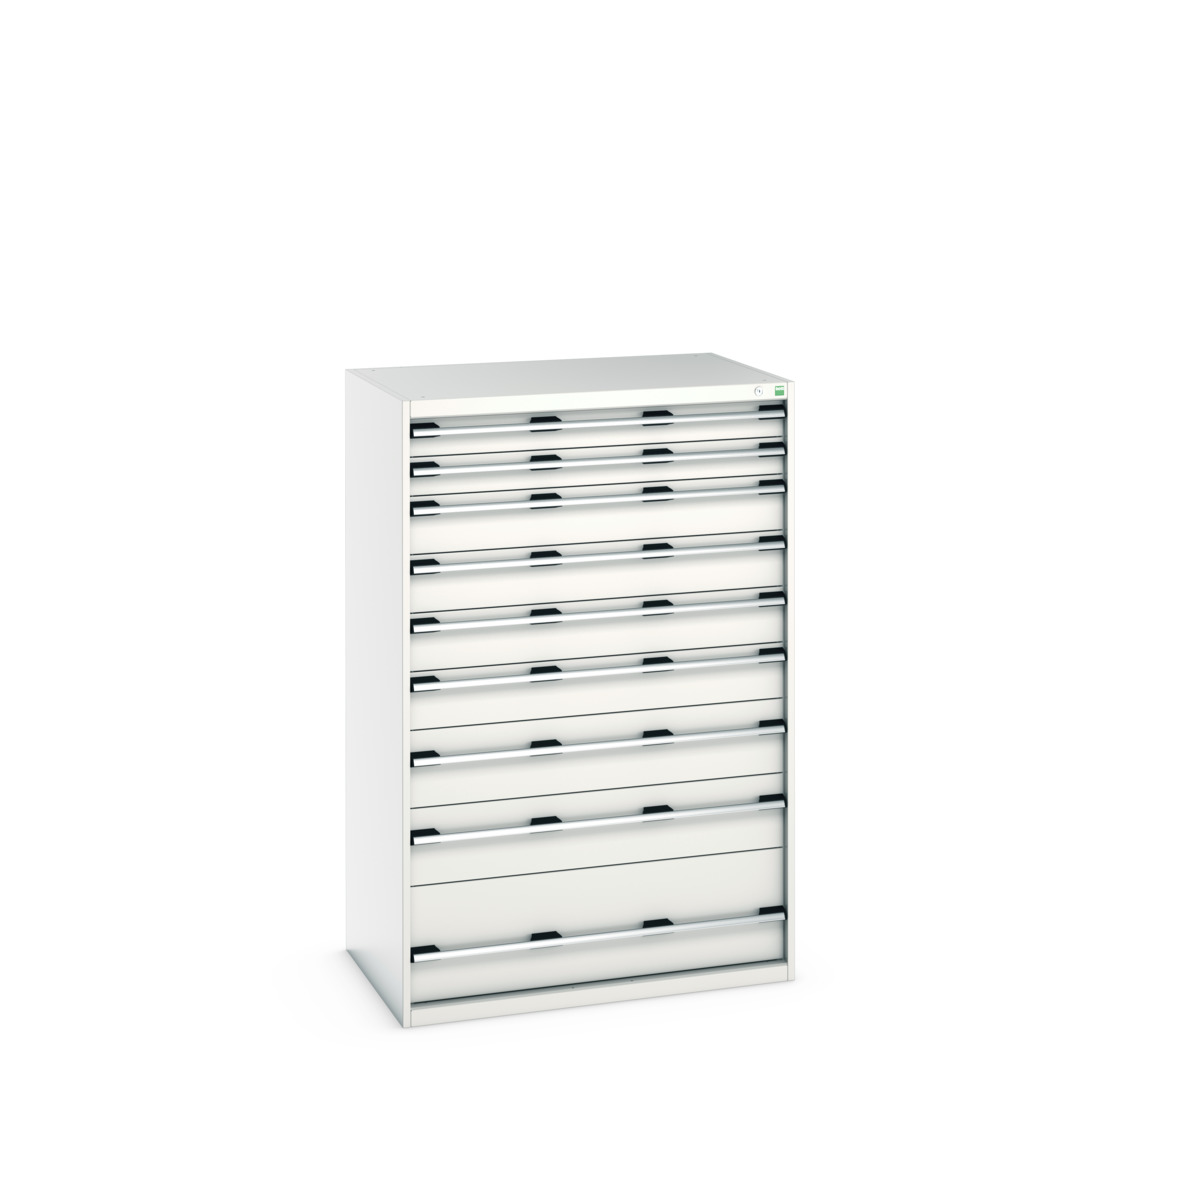 40029035.16V - cubio drawer cabinet